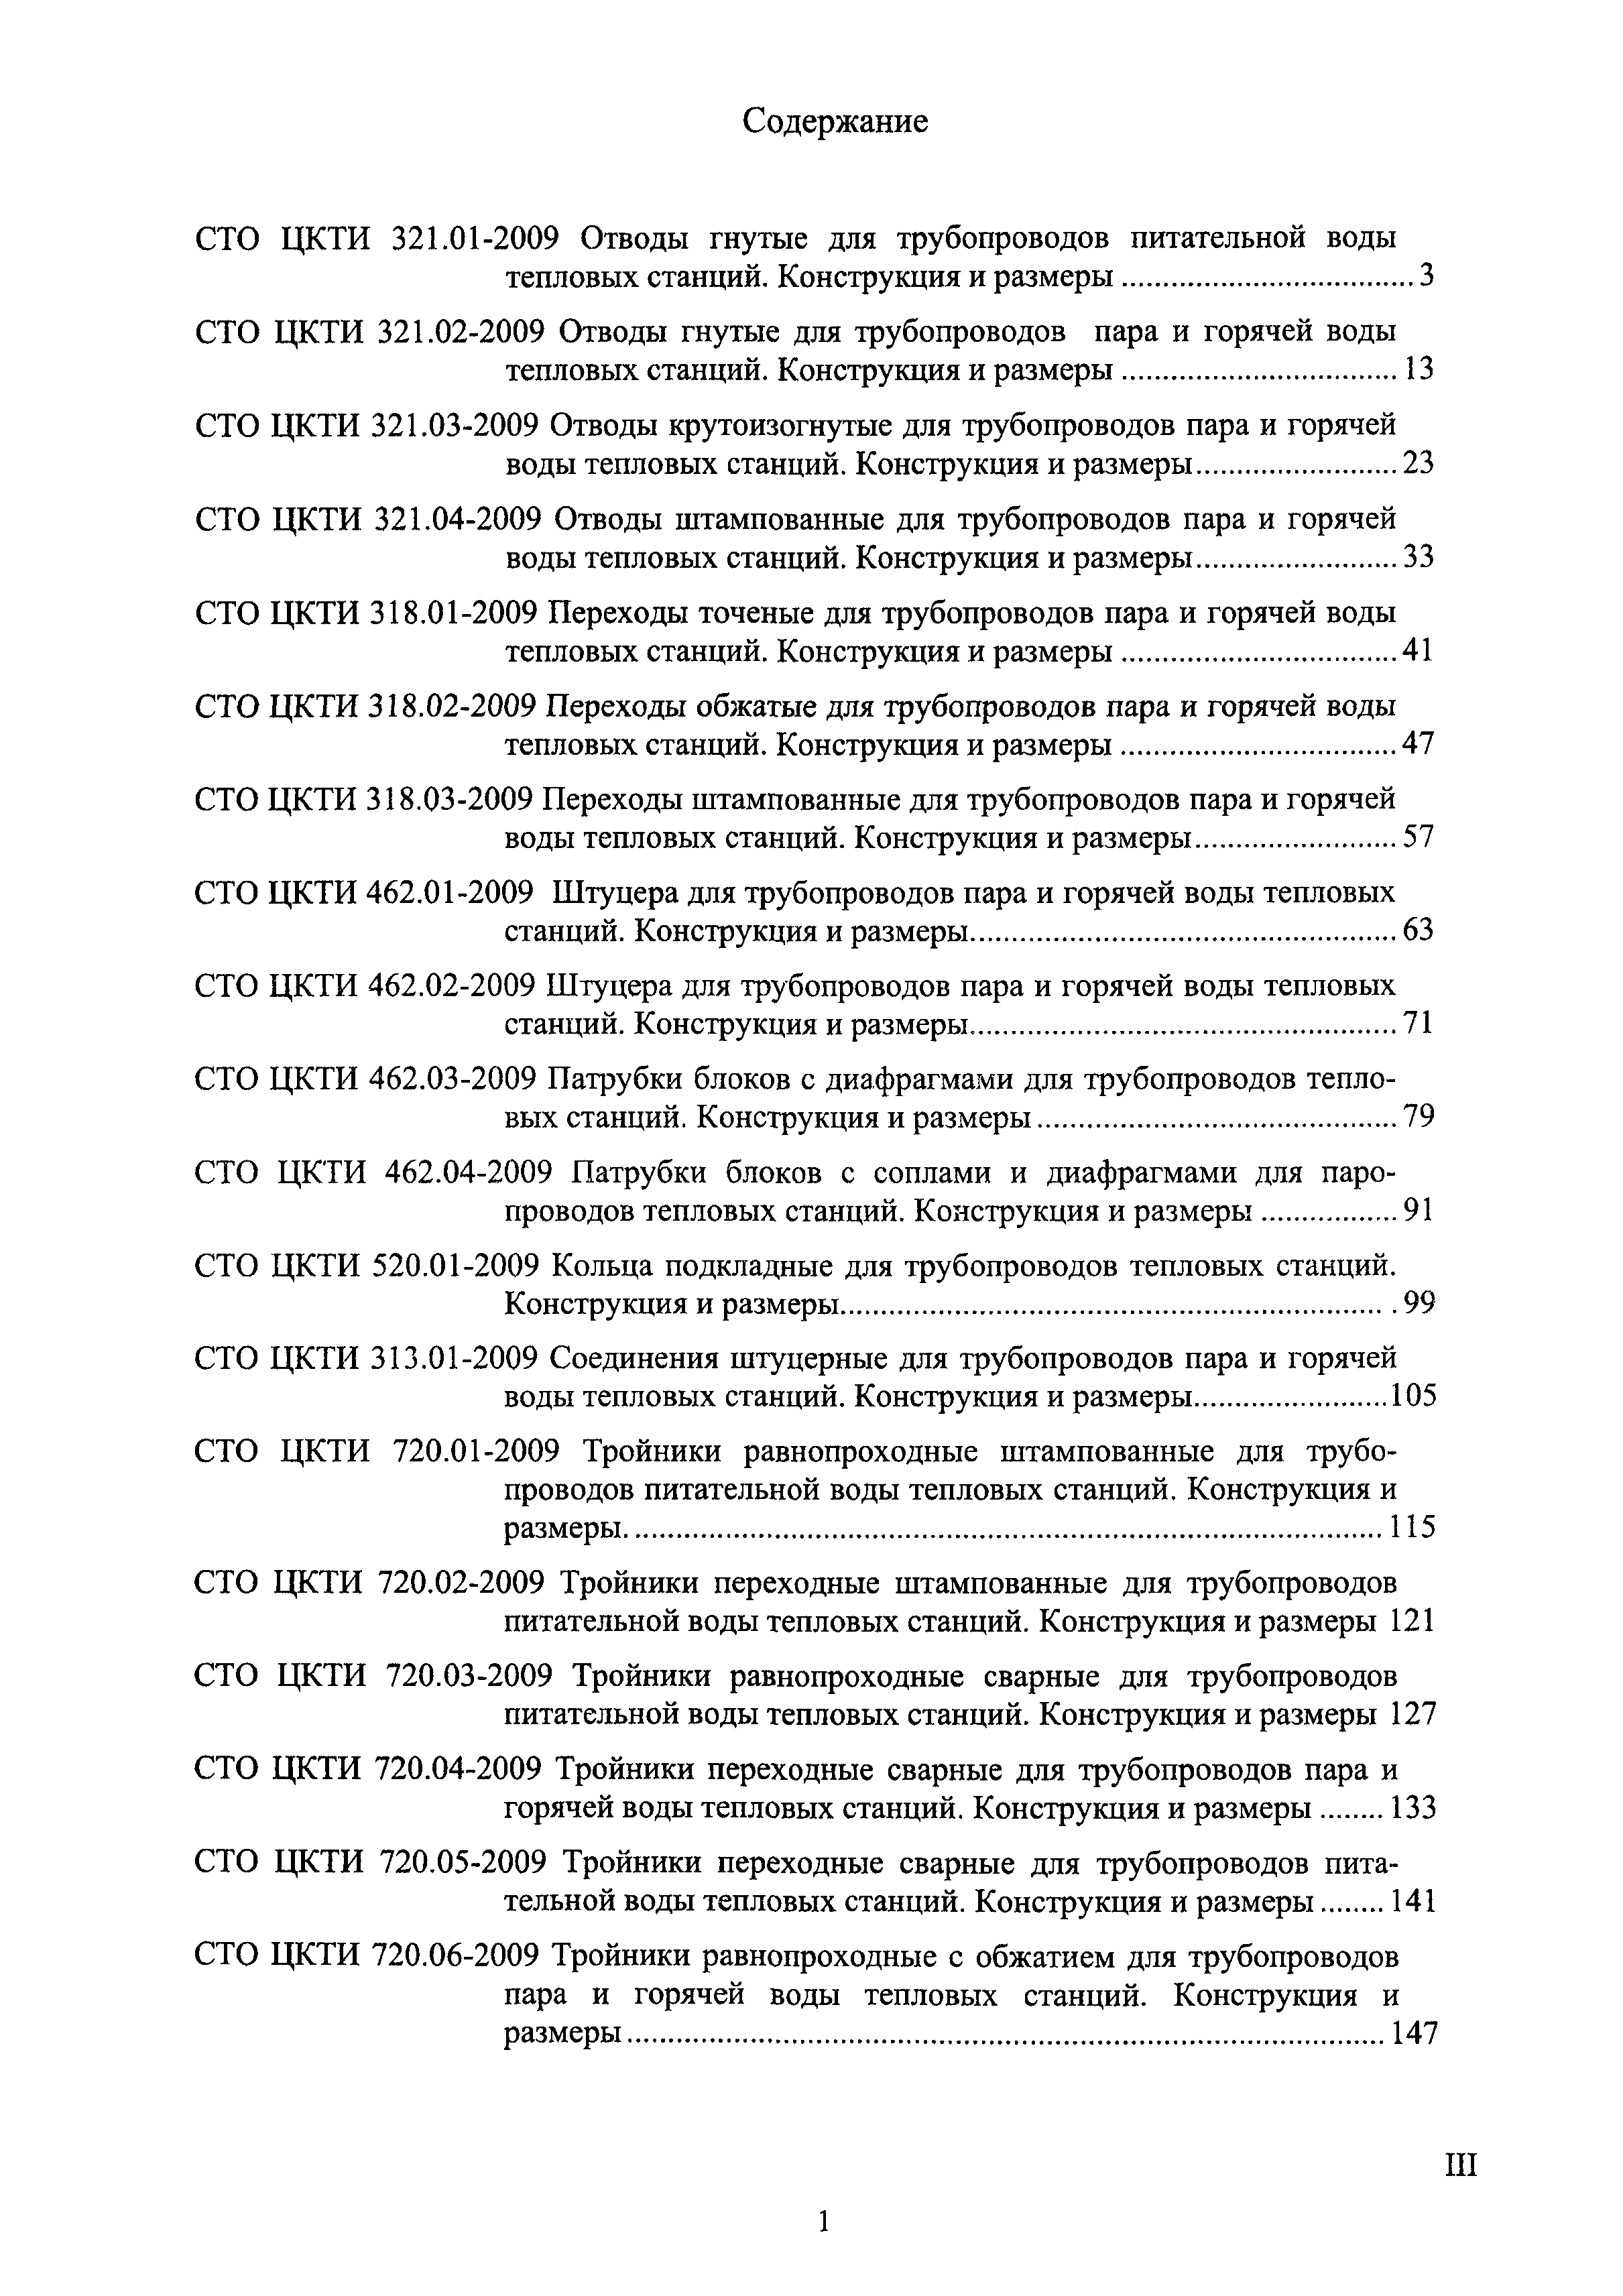 СТО ЦКТИ 318.03-2009